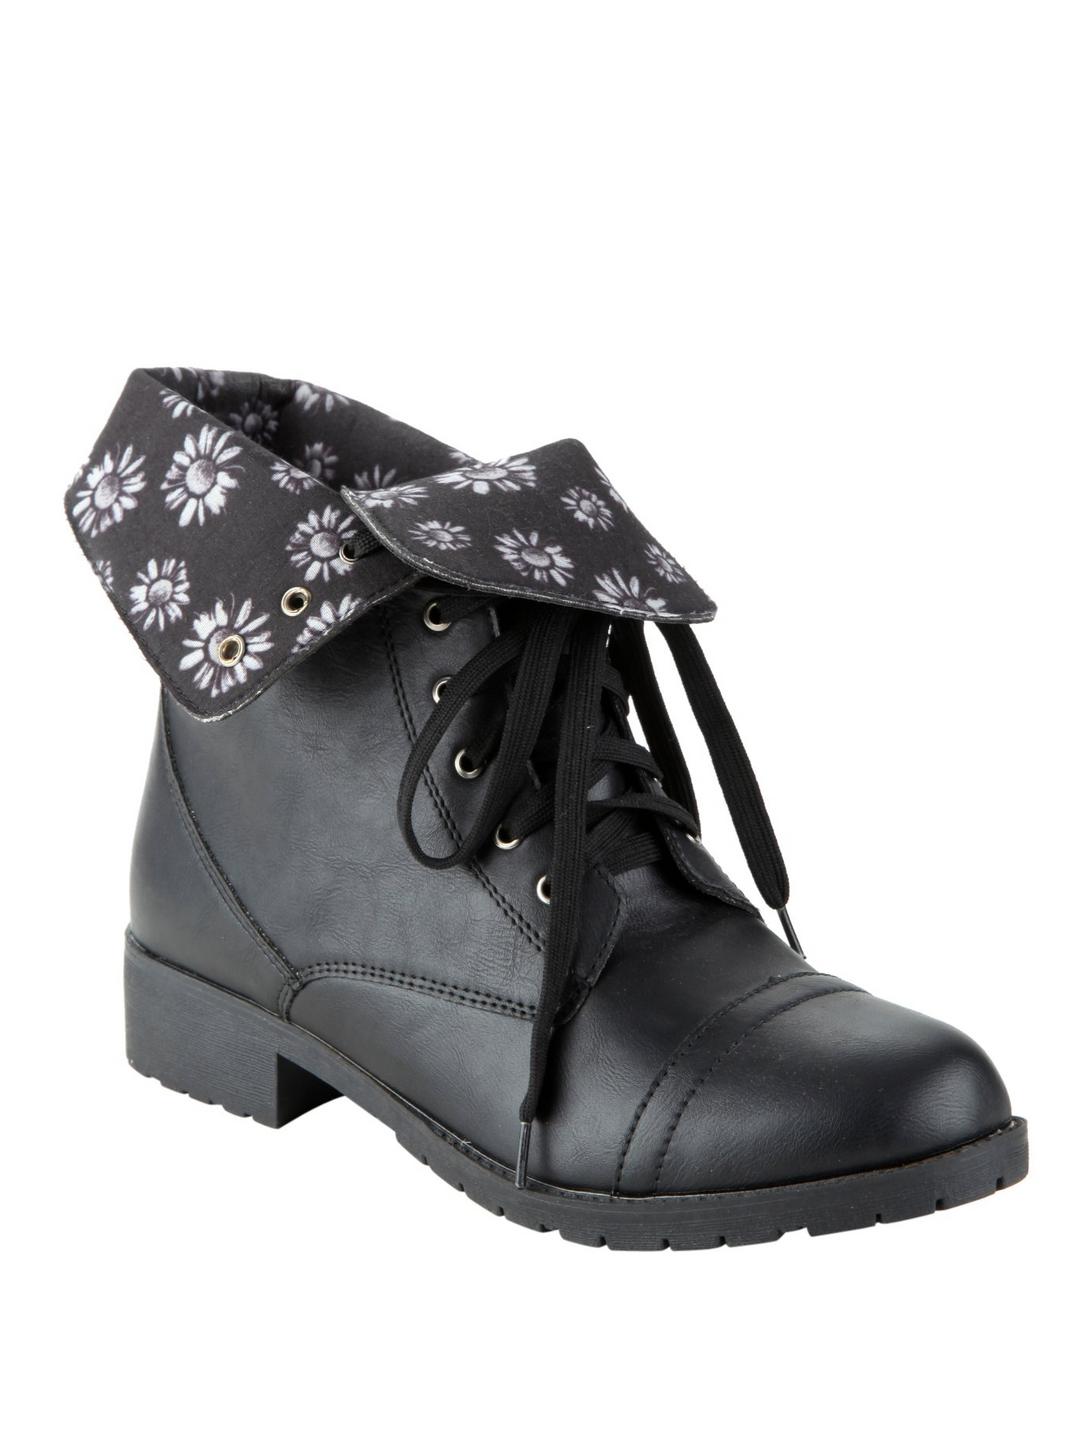 Black Daisy Combat Boots, BLACK, hi-res